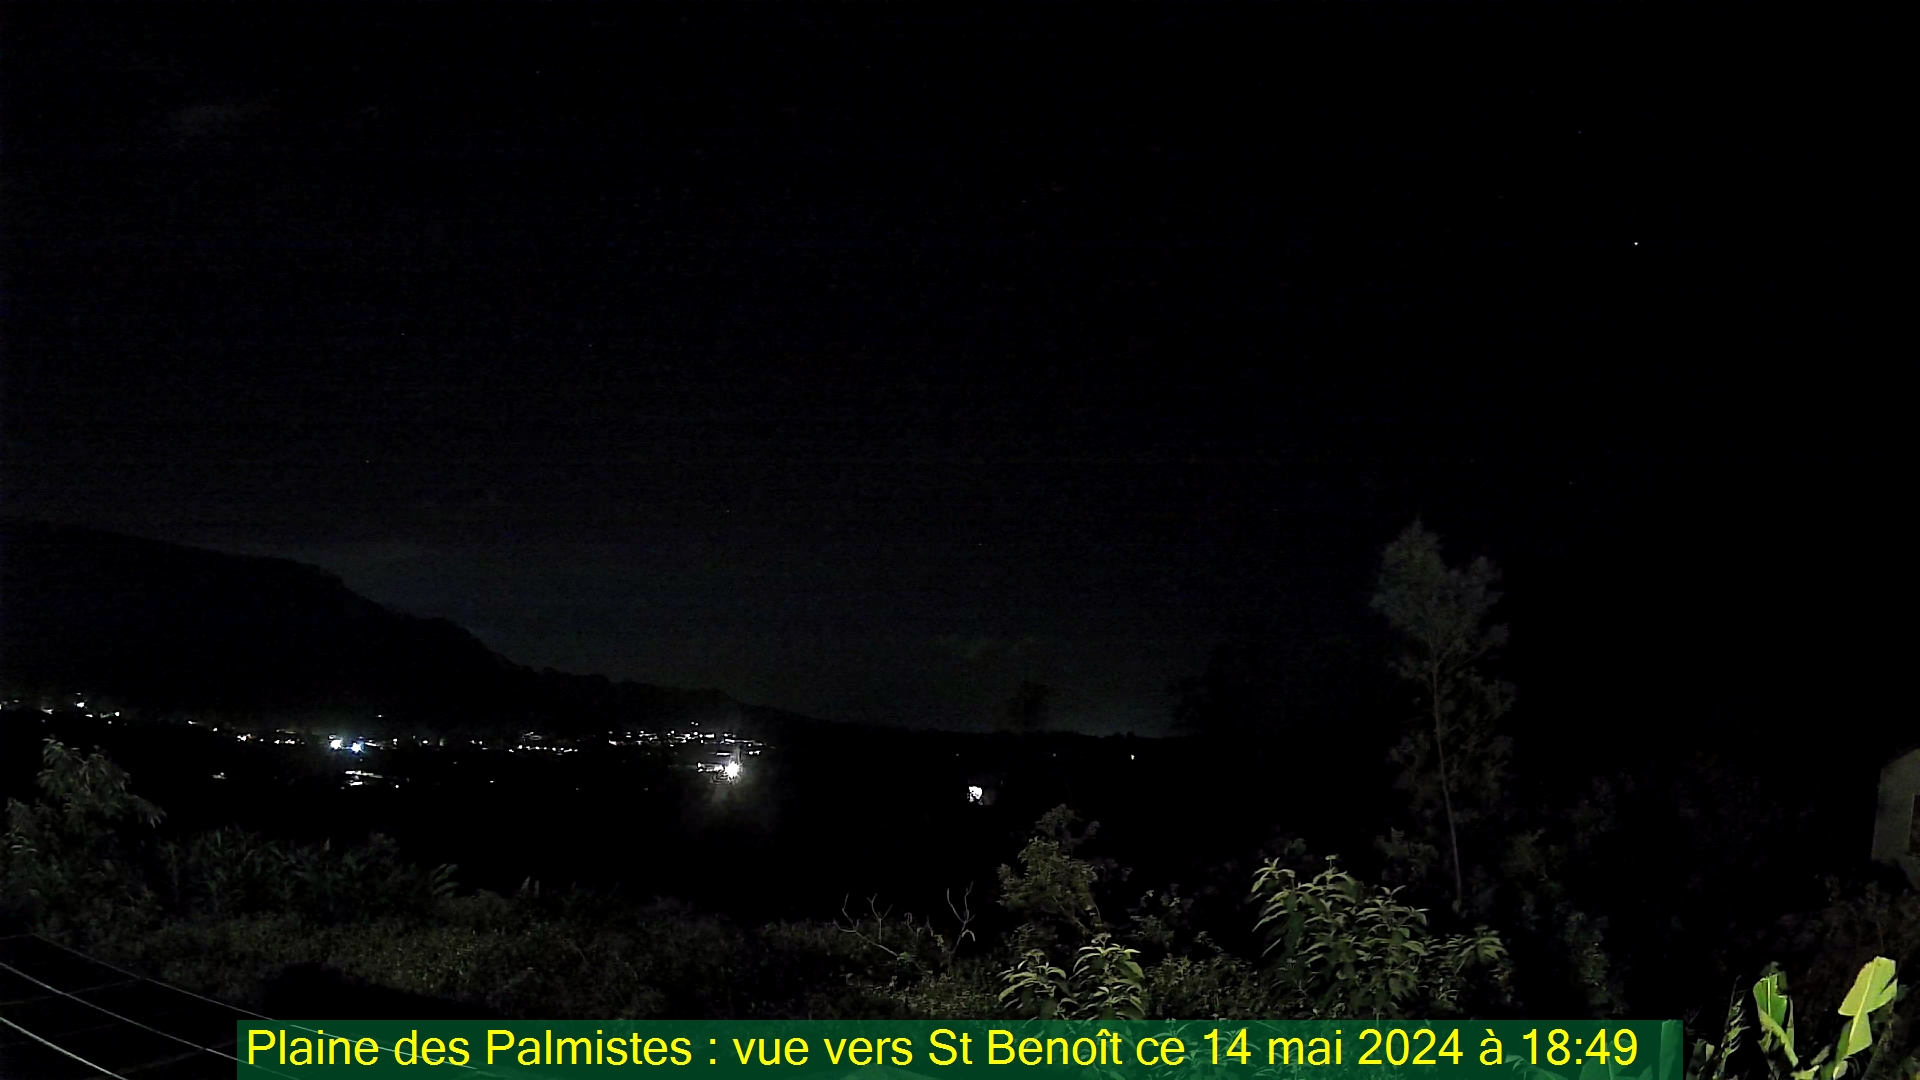 Saint-Denis (Réunion) Do. 18:50